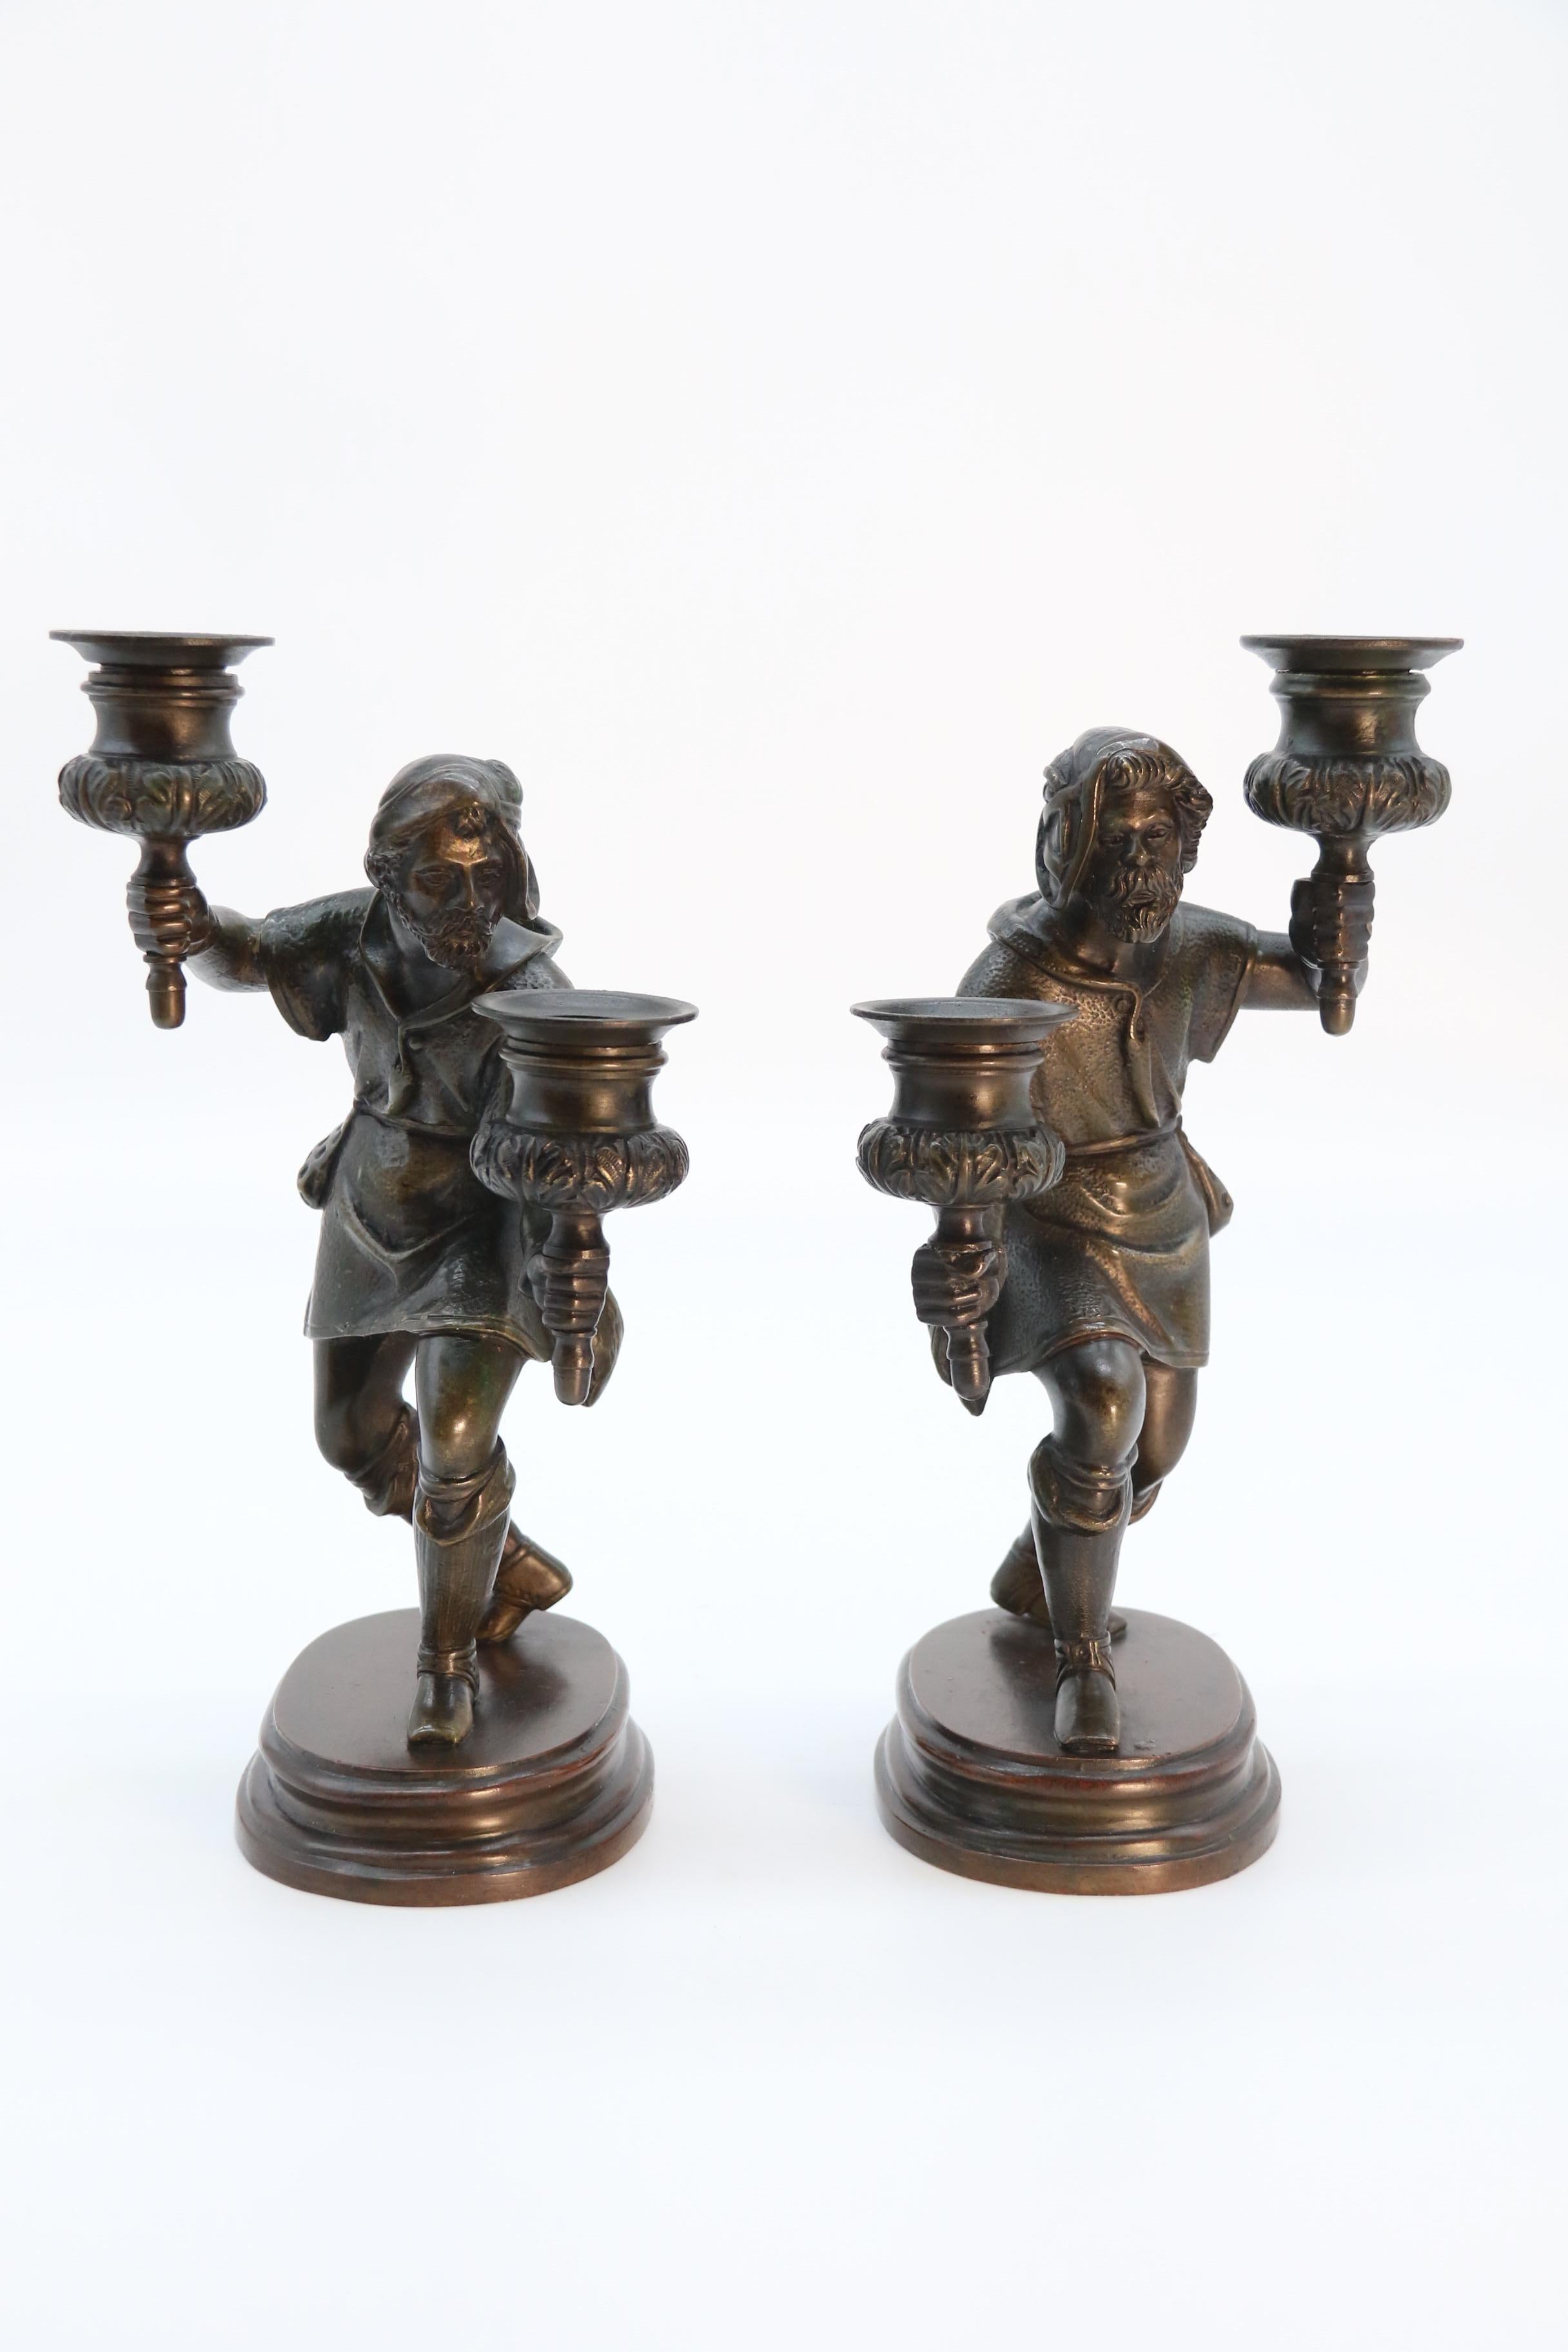 
Dieses hochdekorative Paar Bronze-Doppelleuchter aus der Mitte des 19. Jahrhunderts ist wunderschön in massiver Bronze gegossen. Sie sind sehr detailliert und haben jeweils die Form eines mittelalterlichen Wächters, der mit einem einfachen Hut,